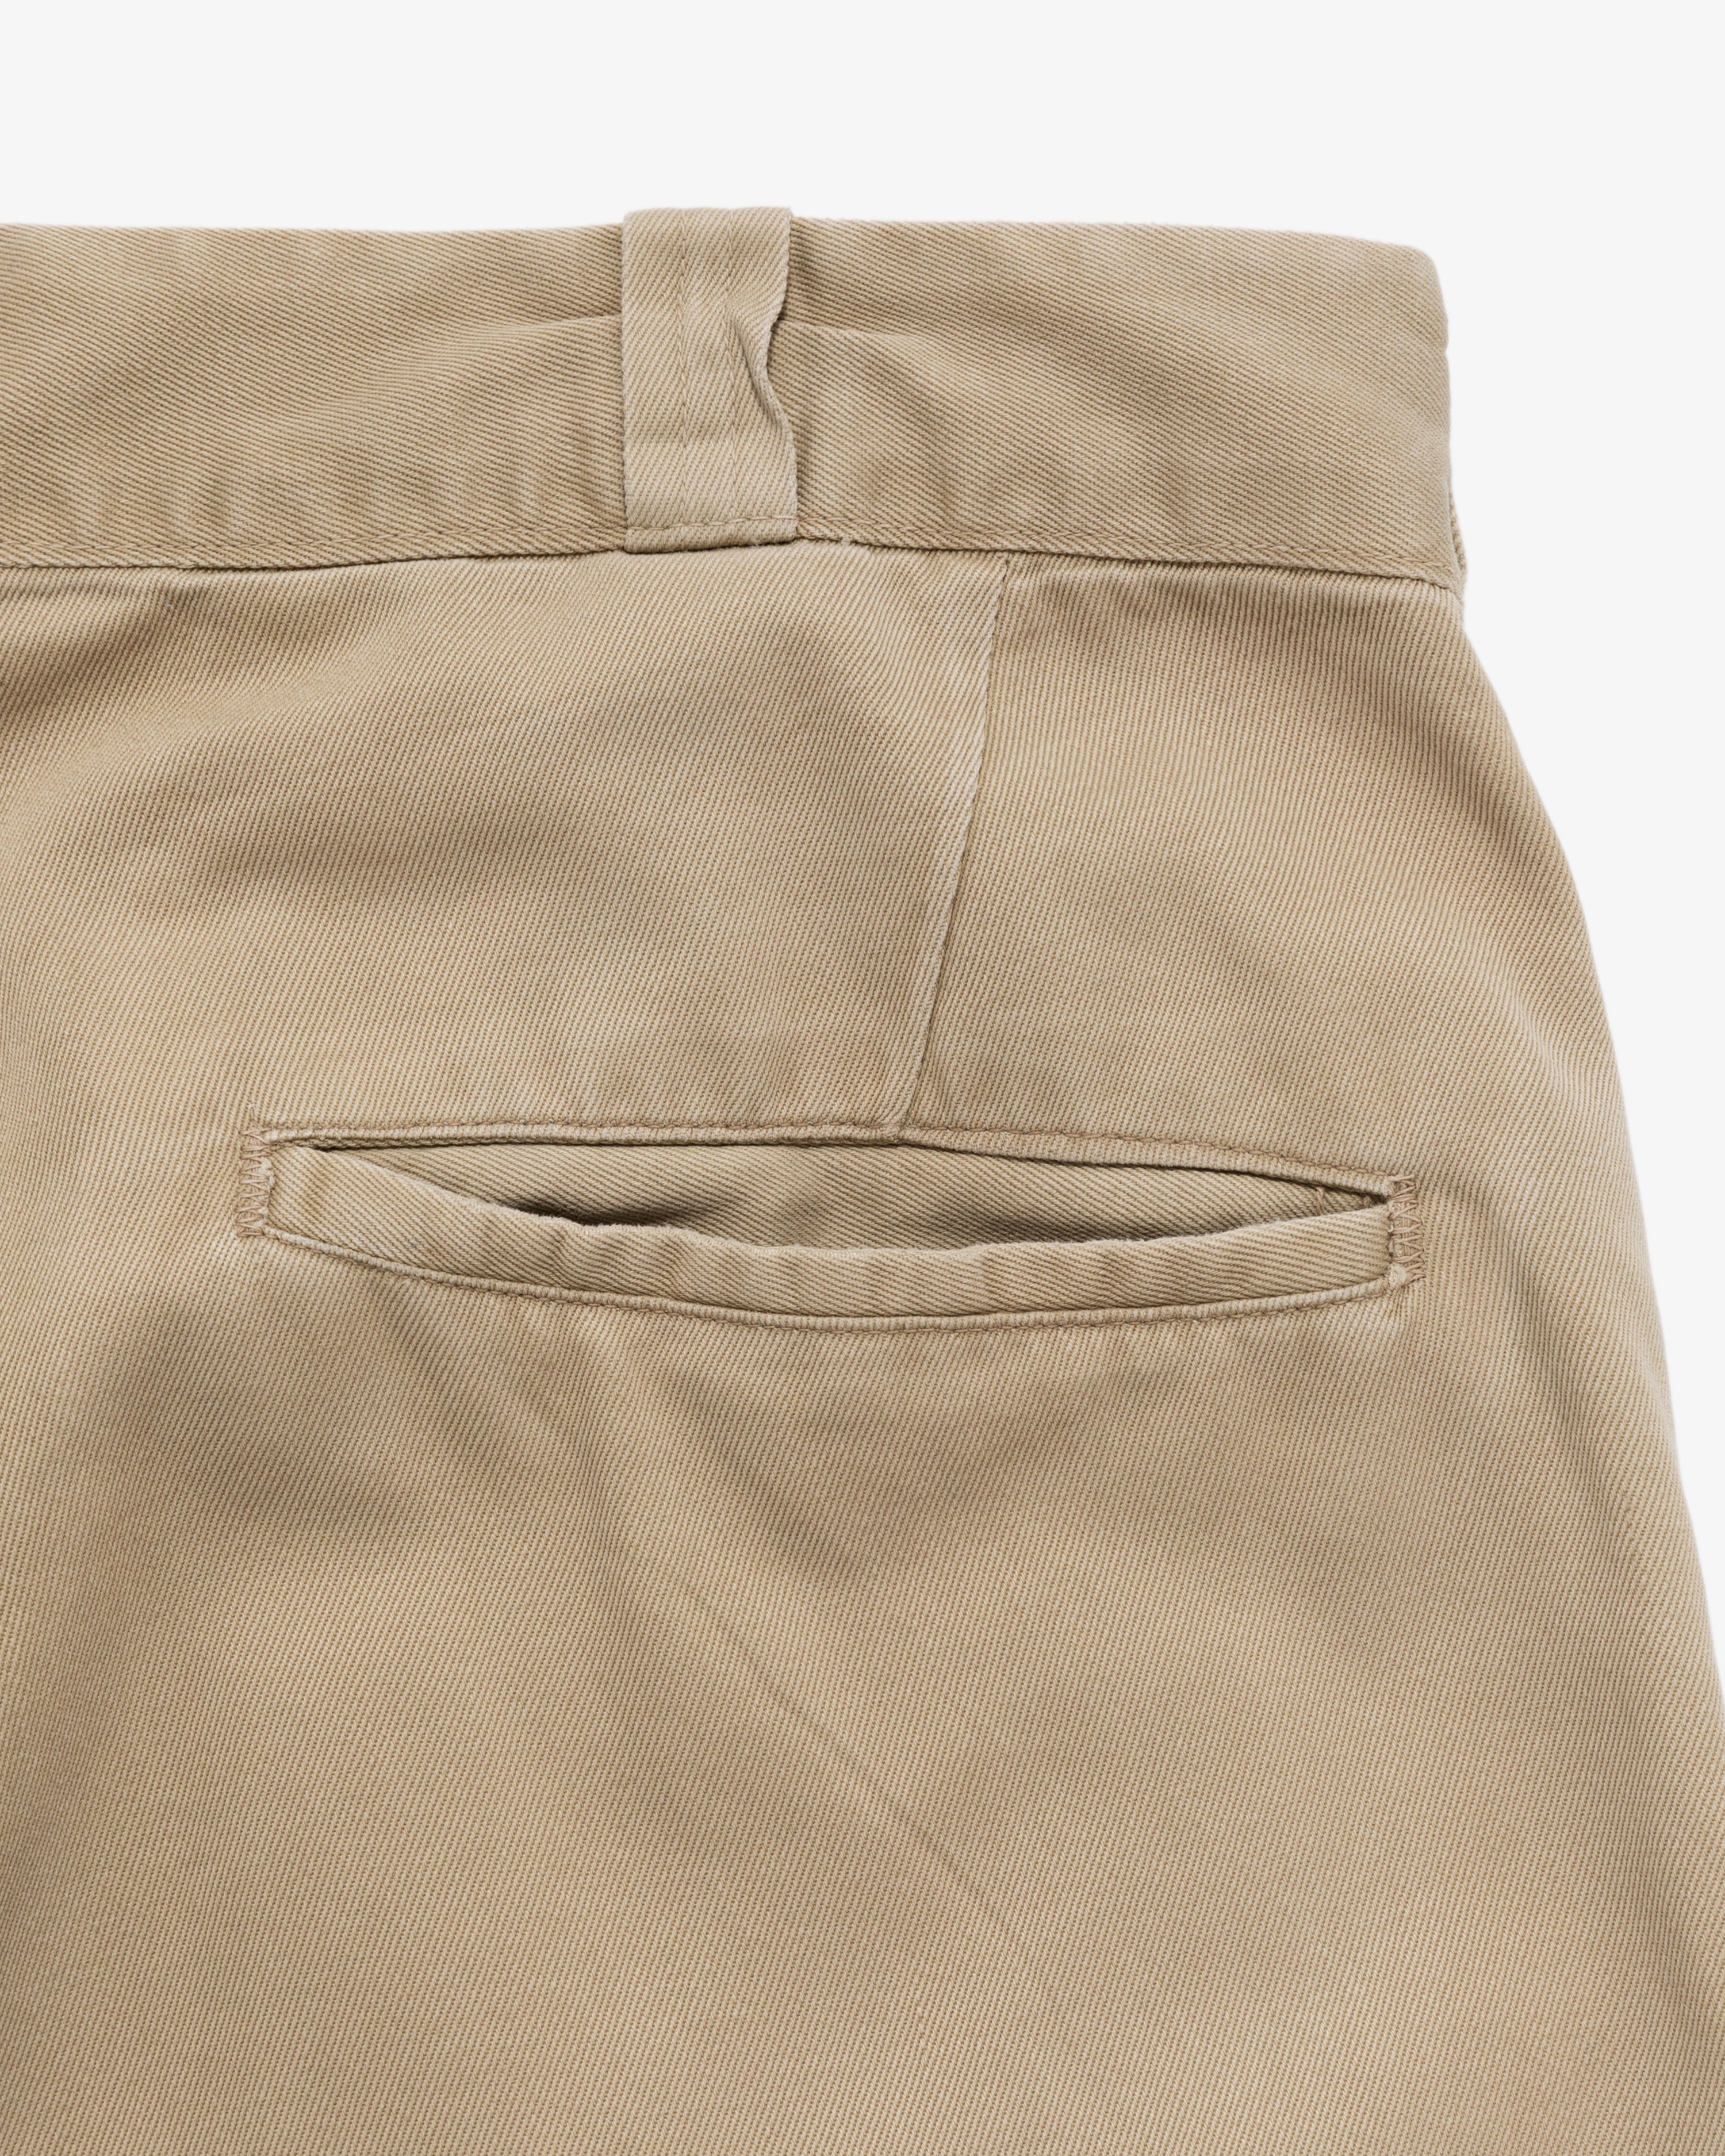 Vintage Type 1 U.S. Army Pants